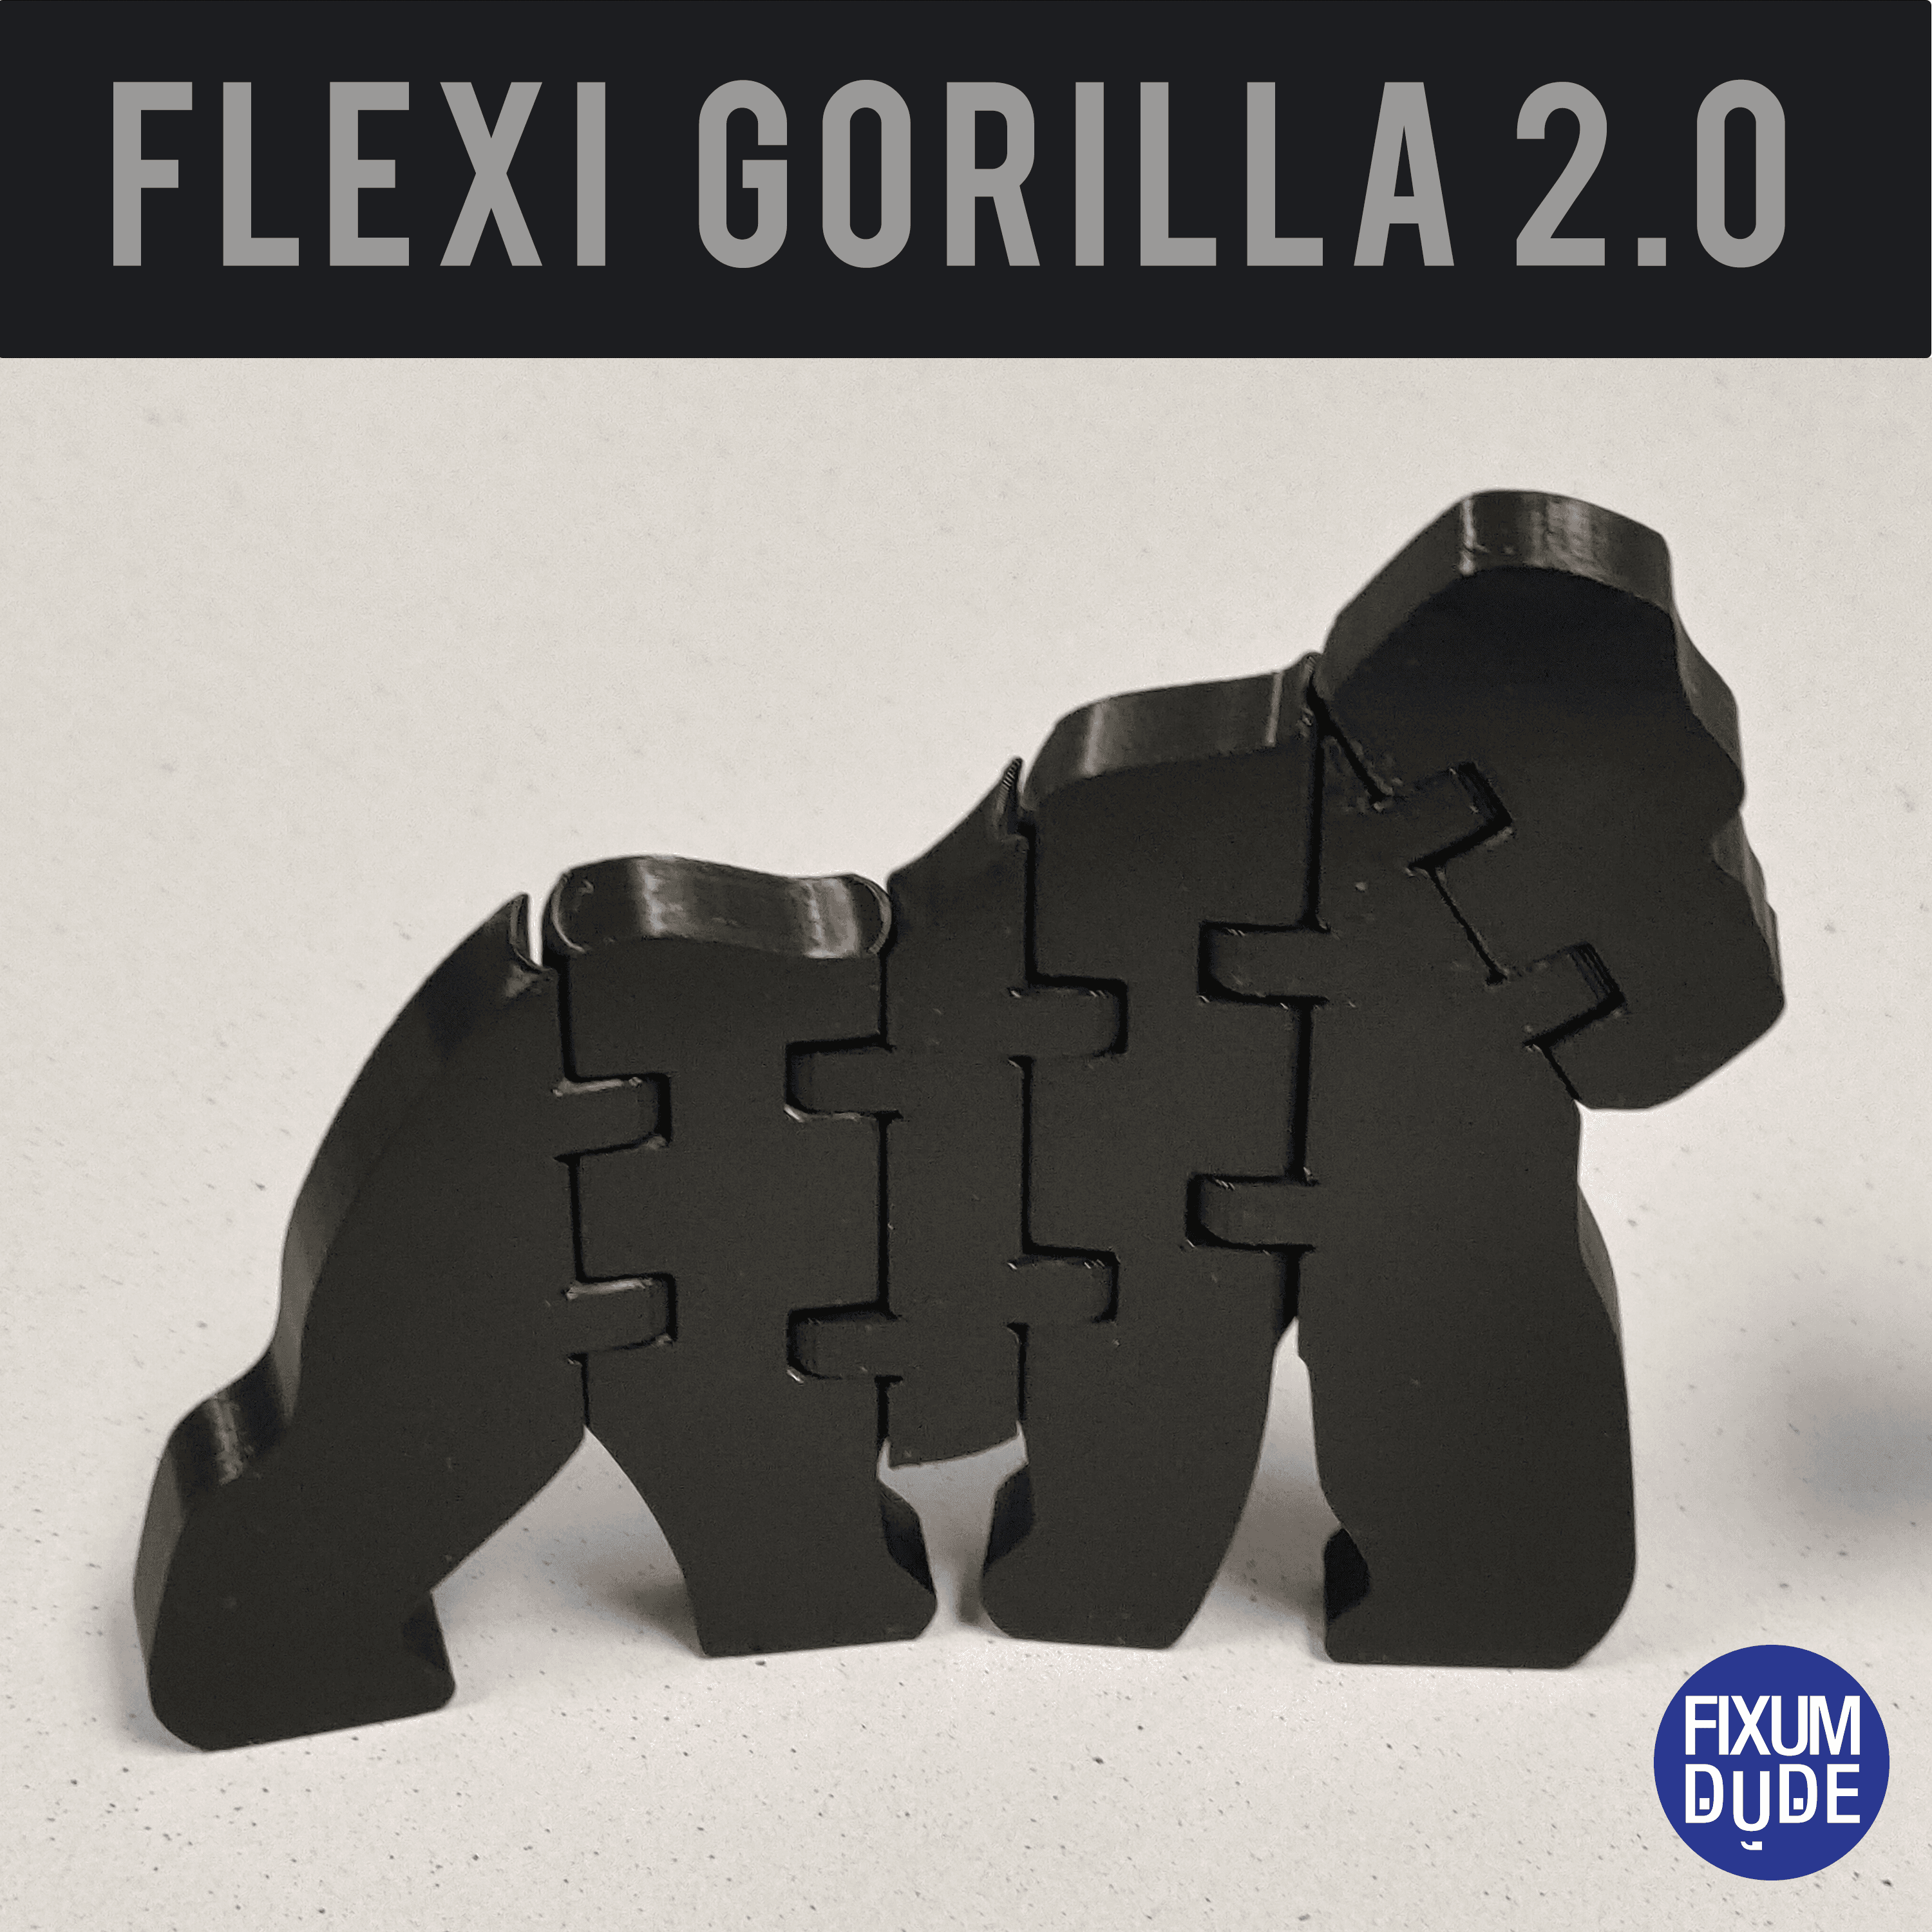 FlexiGorilla 2.0 3d model